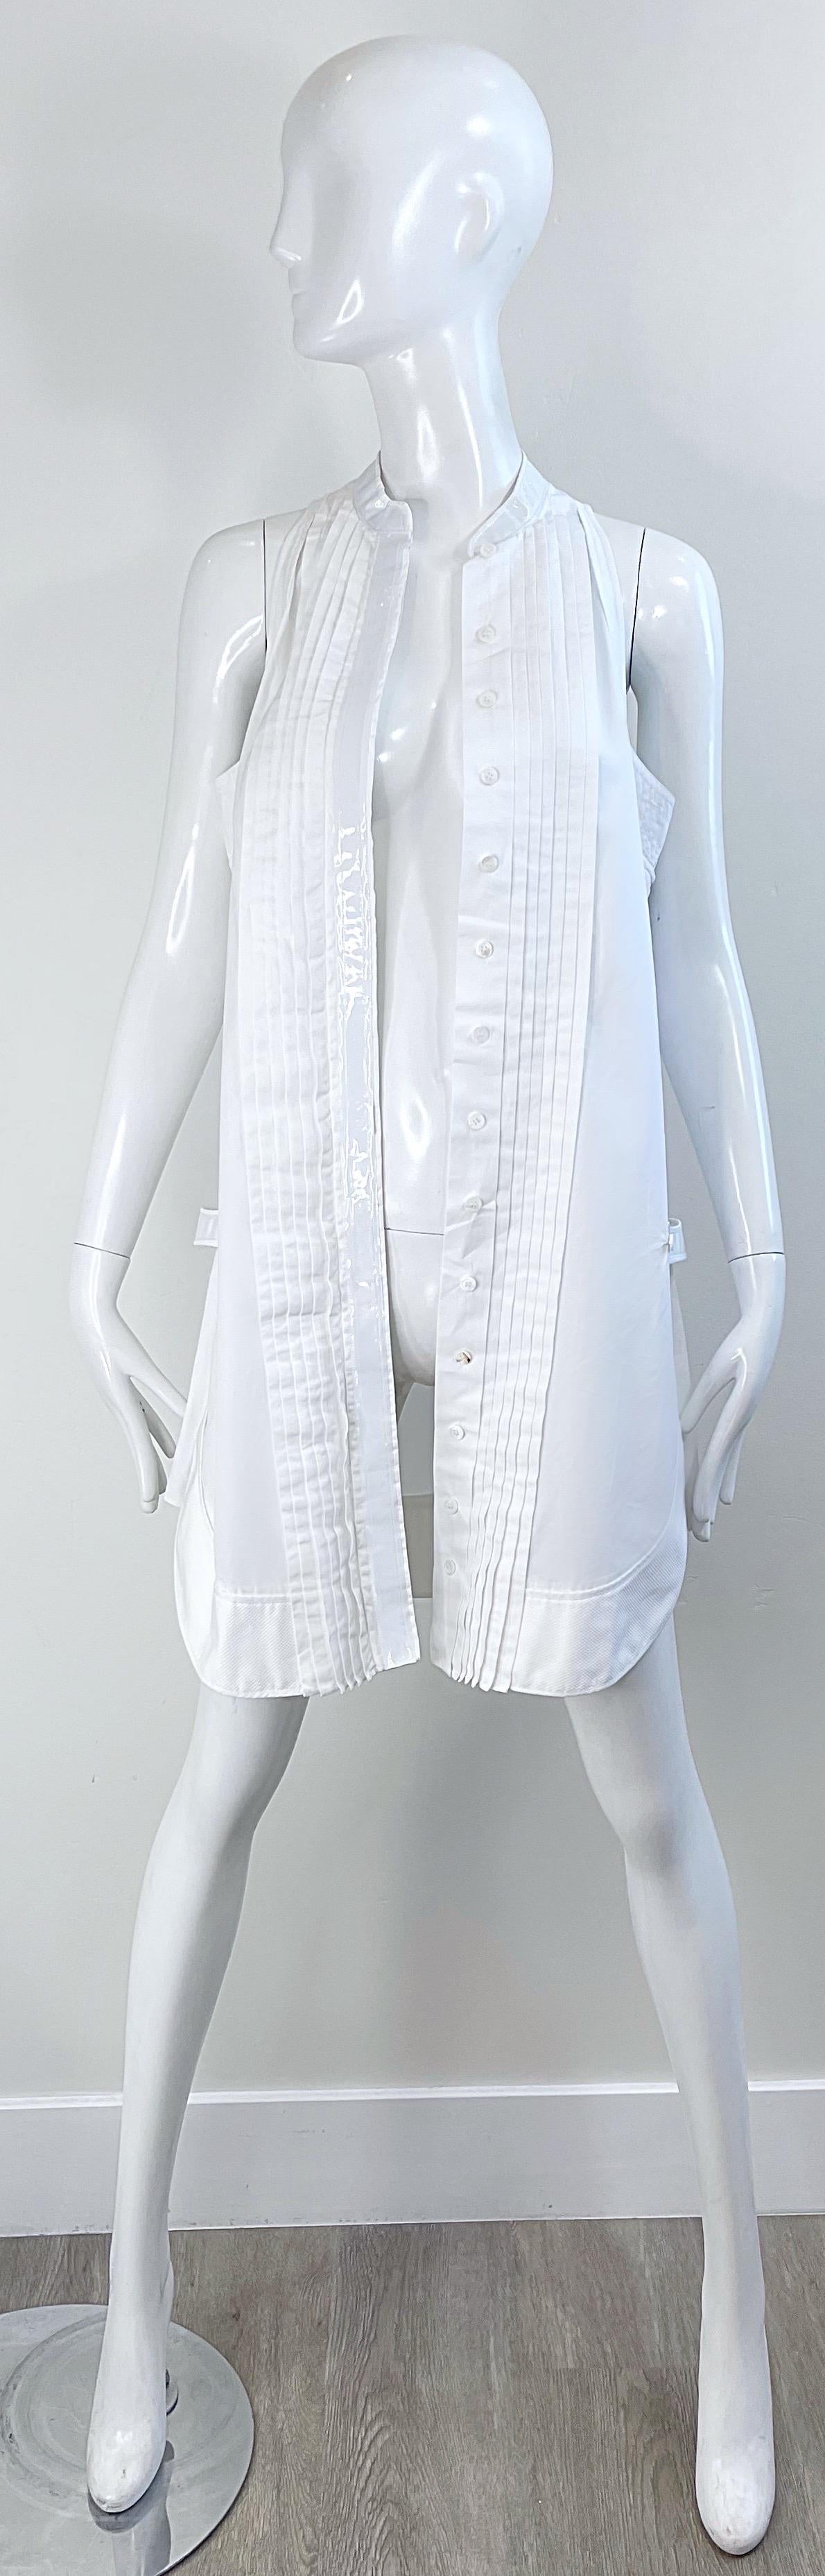 Balenciaga Spring 2007 by Nicolas Ghesquiere Size 38 / 8 White Tuxedo Dress  For Sale 14